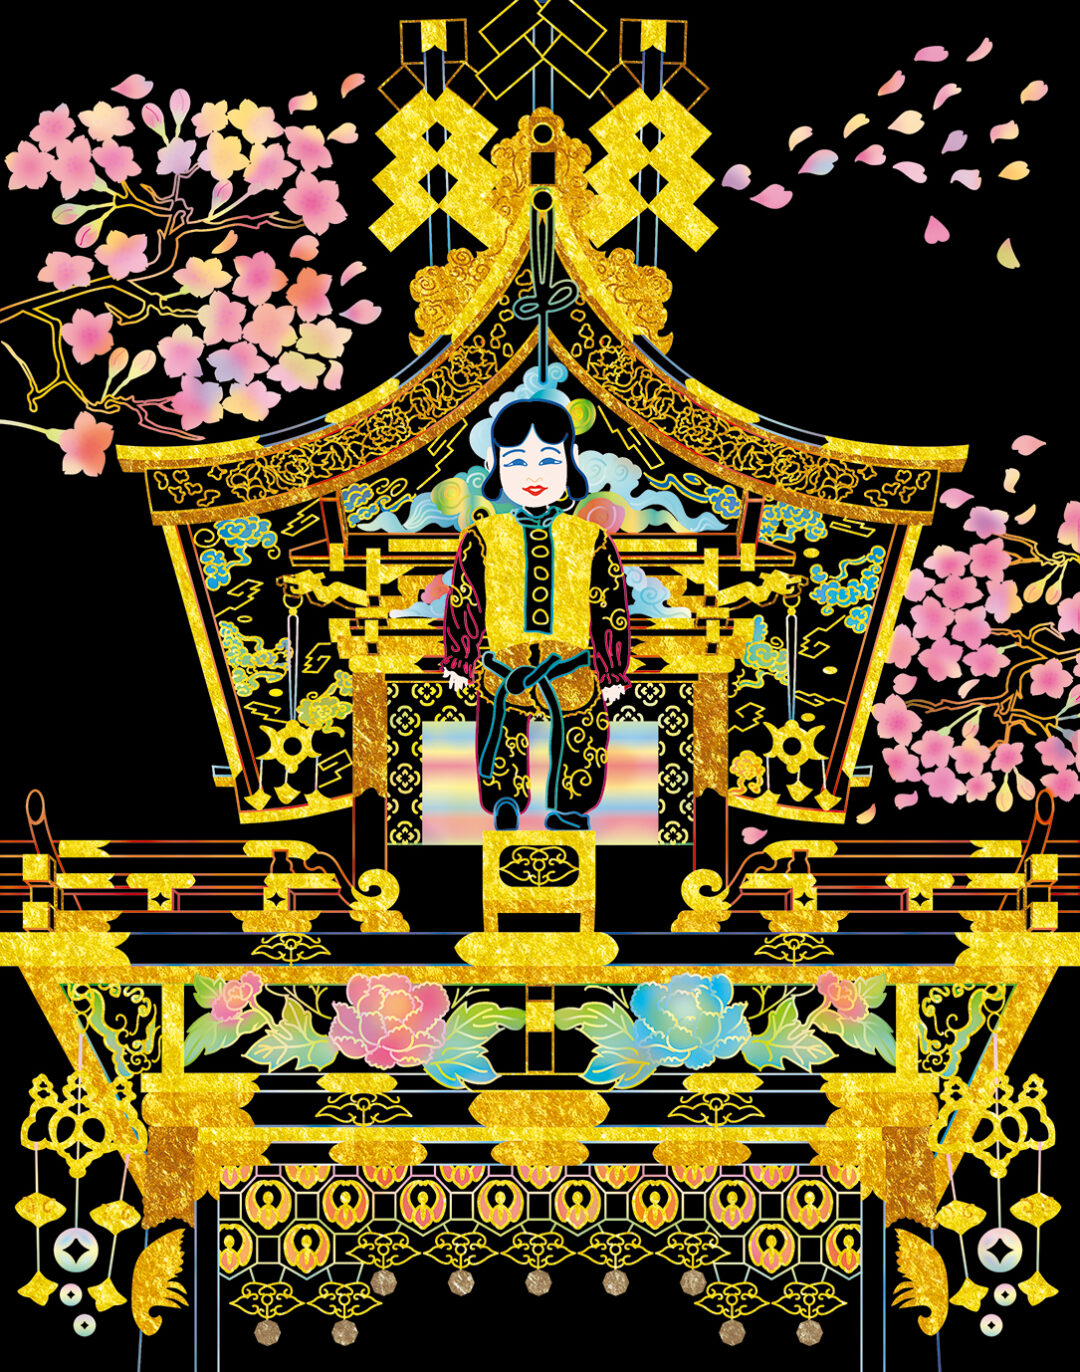 日本三大美祭のひとつ。ユネスコ無形文化遺産にも登録された高山祭は、春の「山王祭」と秋の「八幡祭」の2つがあります。このうち春の「山王祭」は計12台の屋台を曳き、人形のからくり奉納などを行う日枝神社の祭礼です